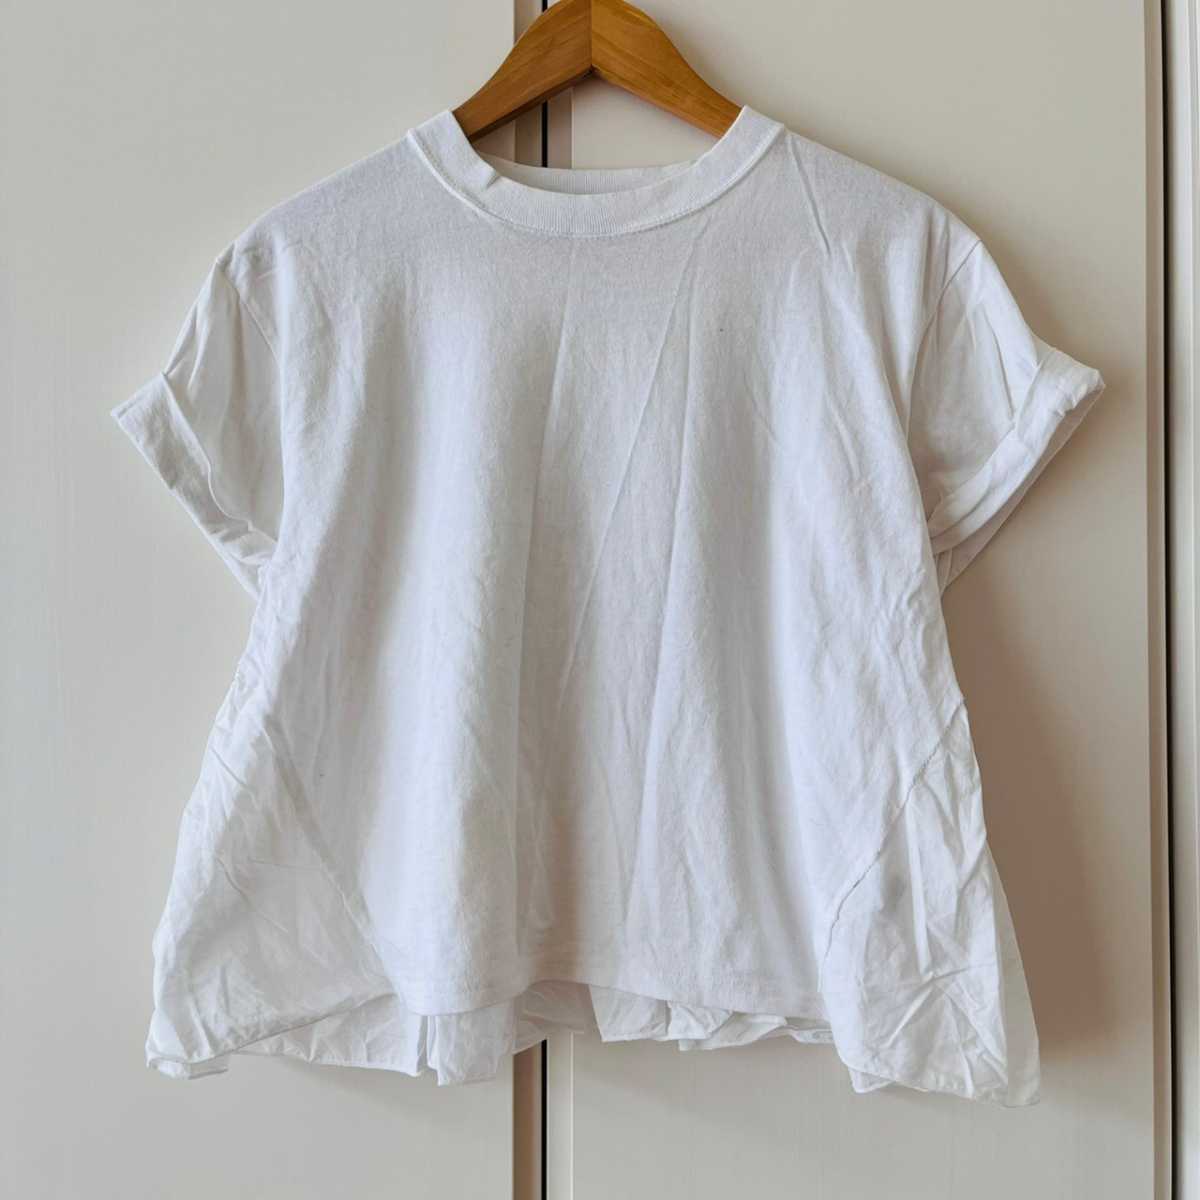 F5599cL USA製《BULSARA バルサラ》サイズM 半袖Tシャツ Tee カットソー ホワイト レディース コットン100% アメリカ製 オシャレ フリル_画像1